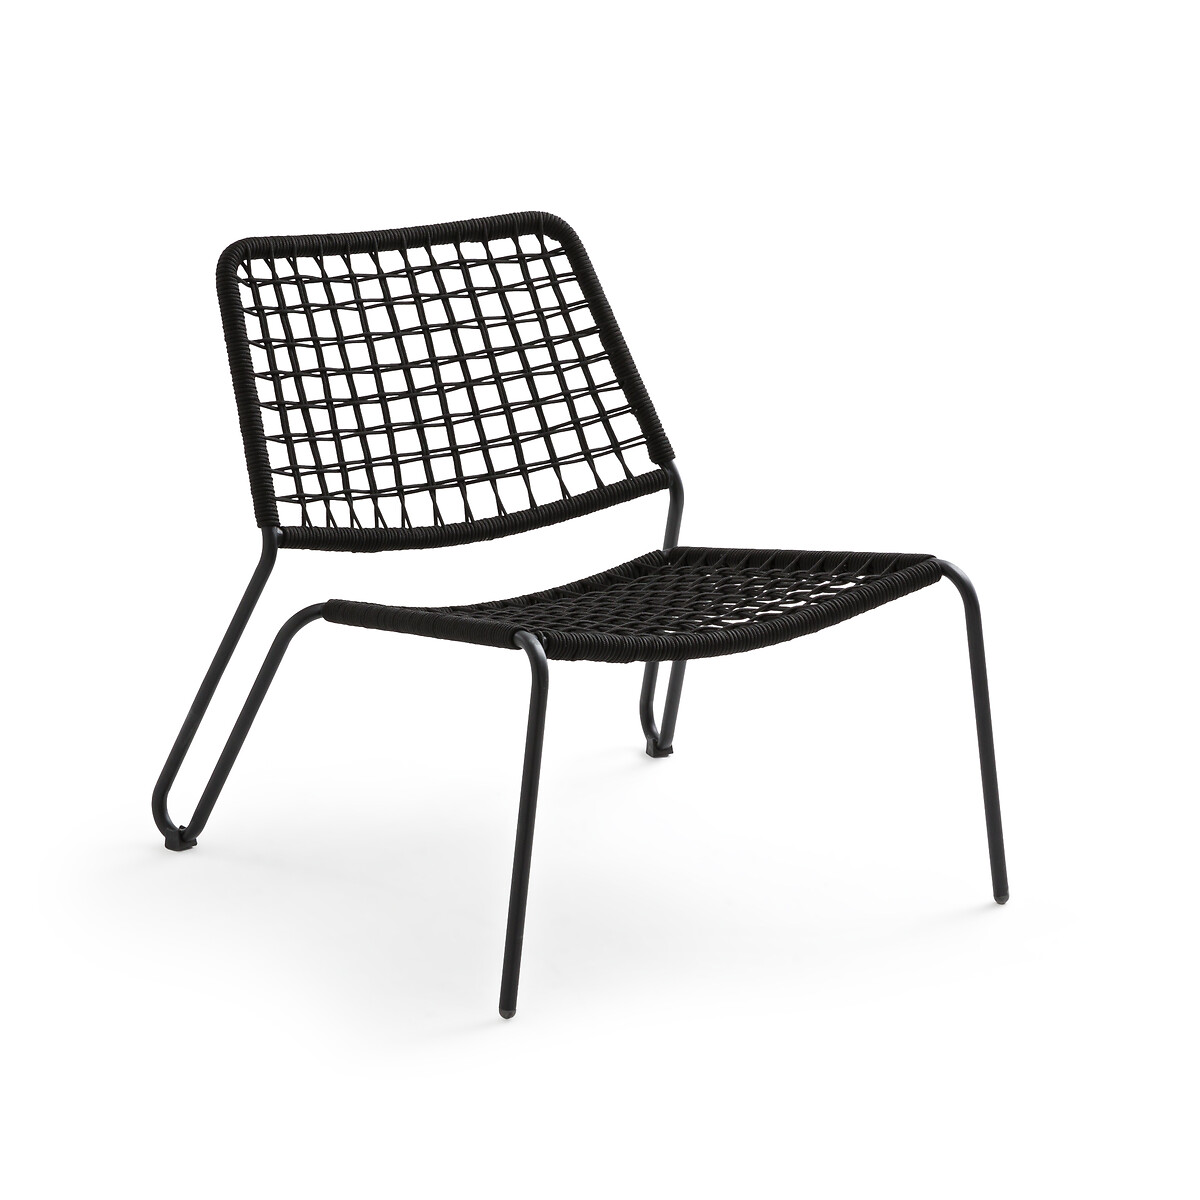 Кресло садовое низкое из металла и плетеной веревки Masix единый размер черный